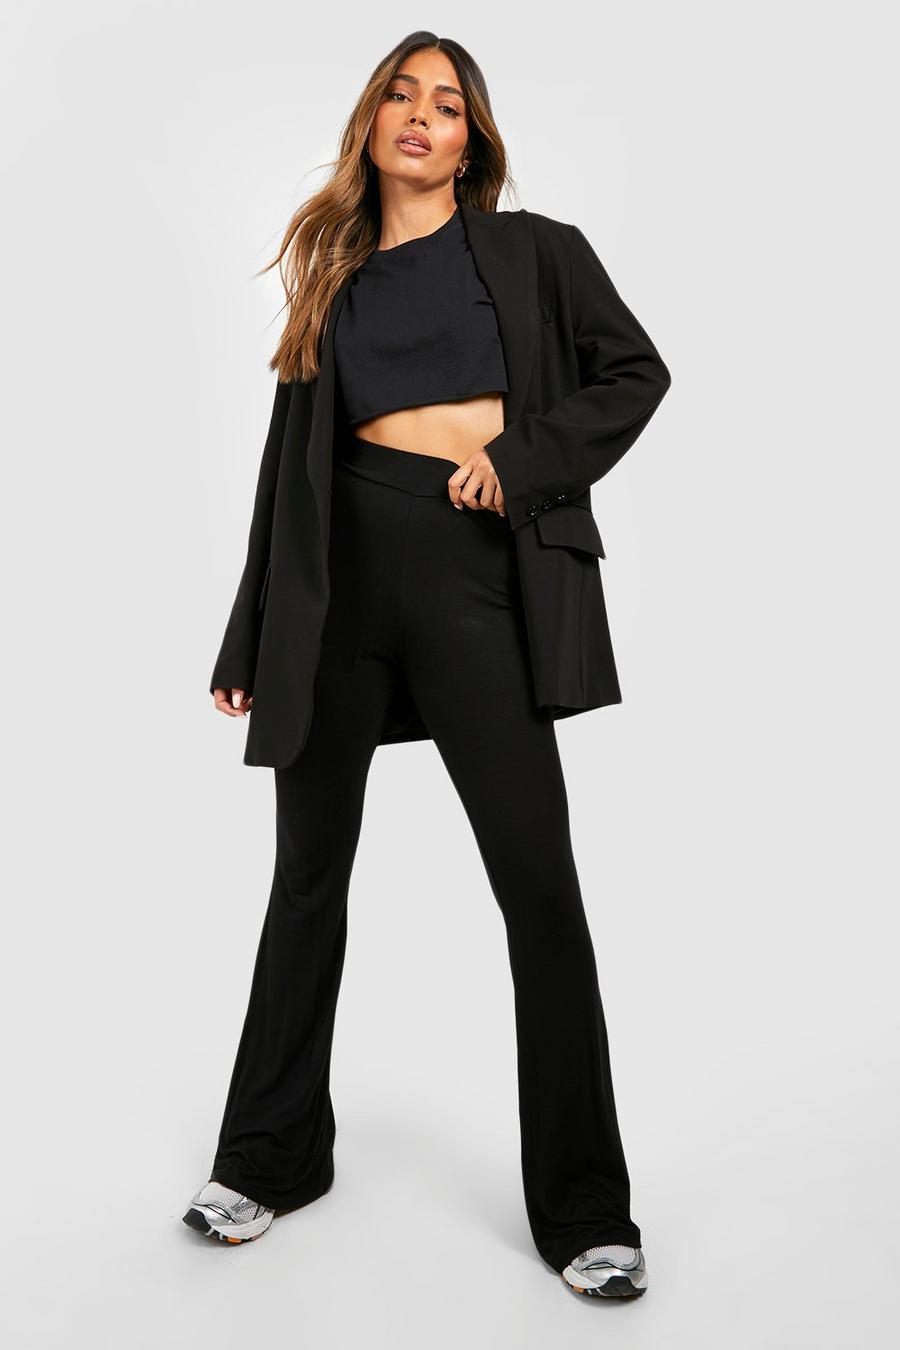 שחור בייסיק high waist הדוק + מכנסיים מתרחבים